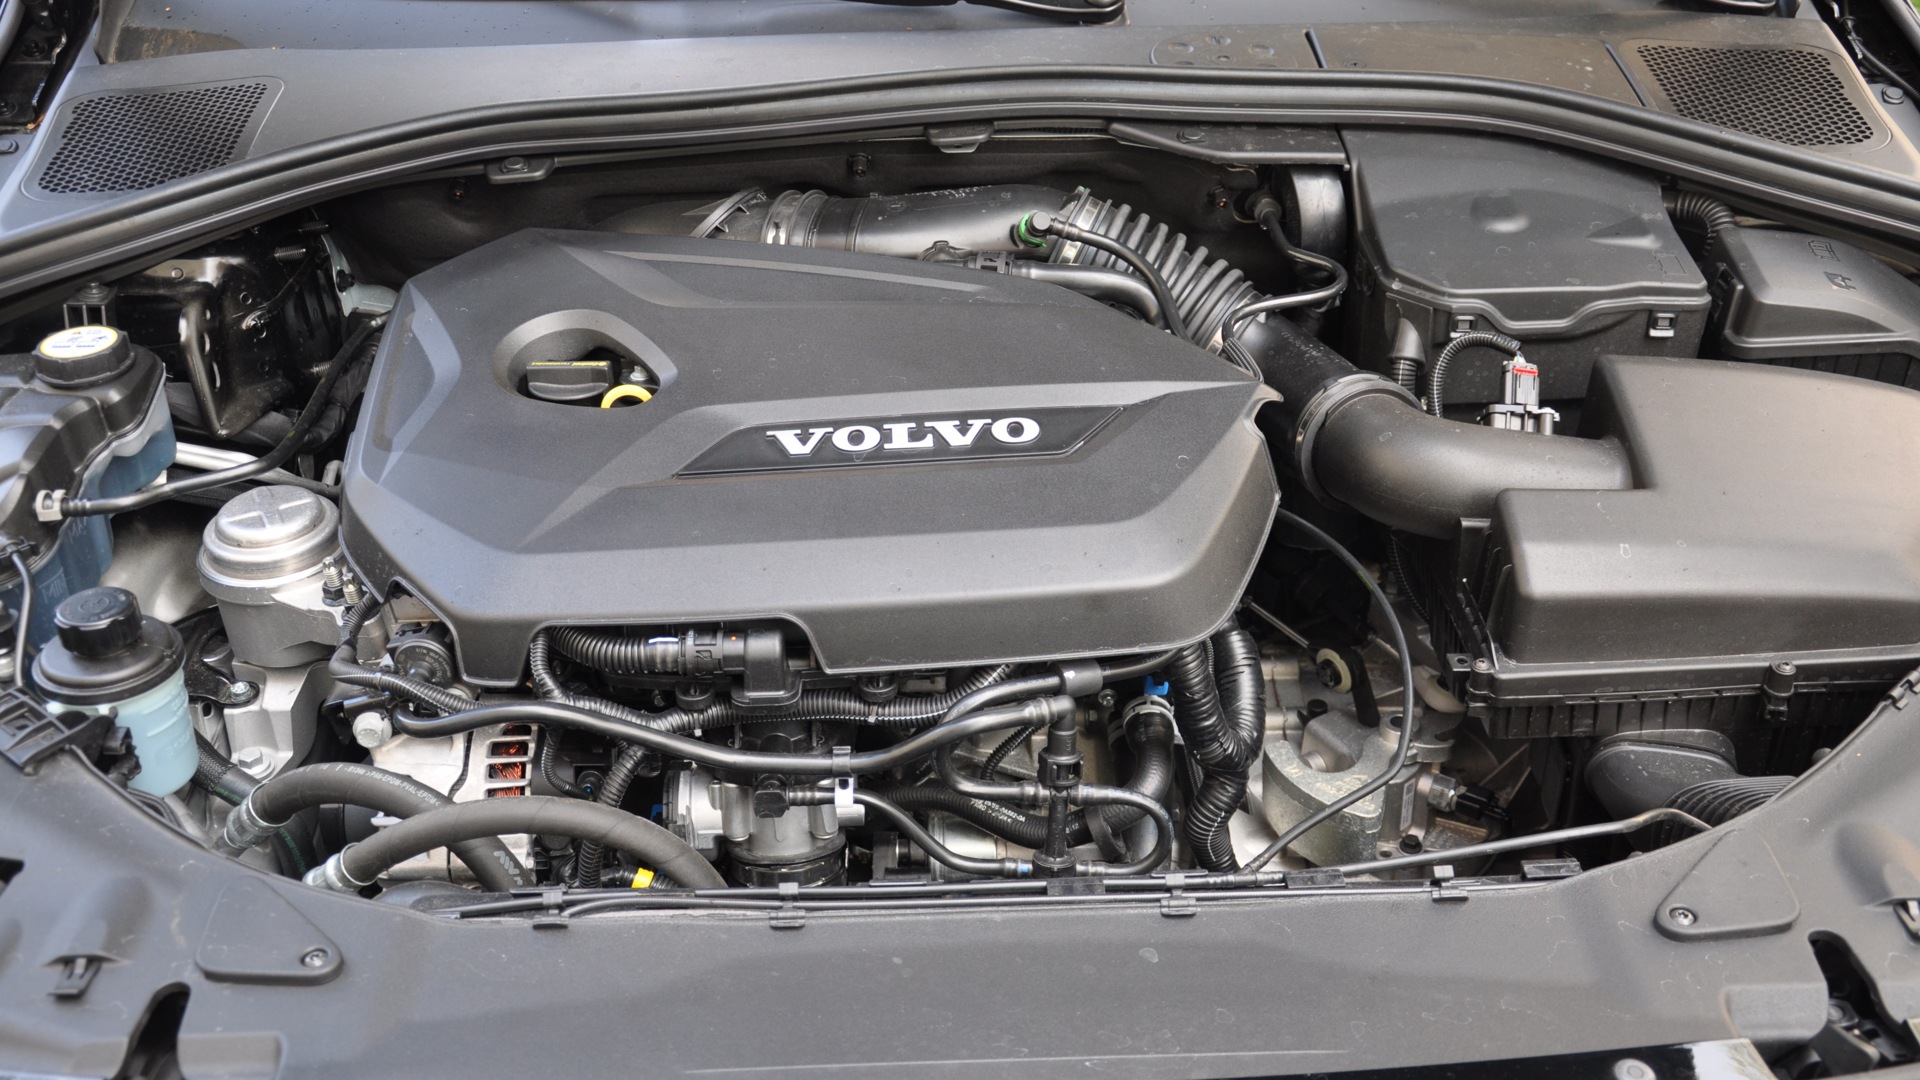 Volvo s60 двигатели. Вольво s60 1.6. Двигатель Вольво s60 1,6. Мотор Вольво s60 1.6 турбо. Вольво s60 под капотом.